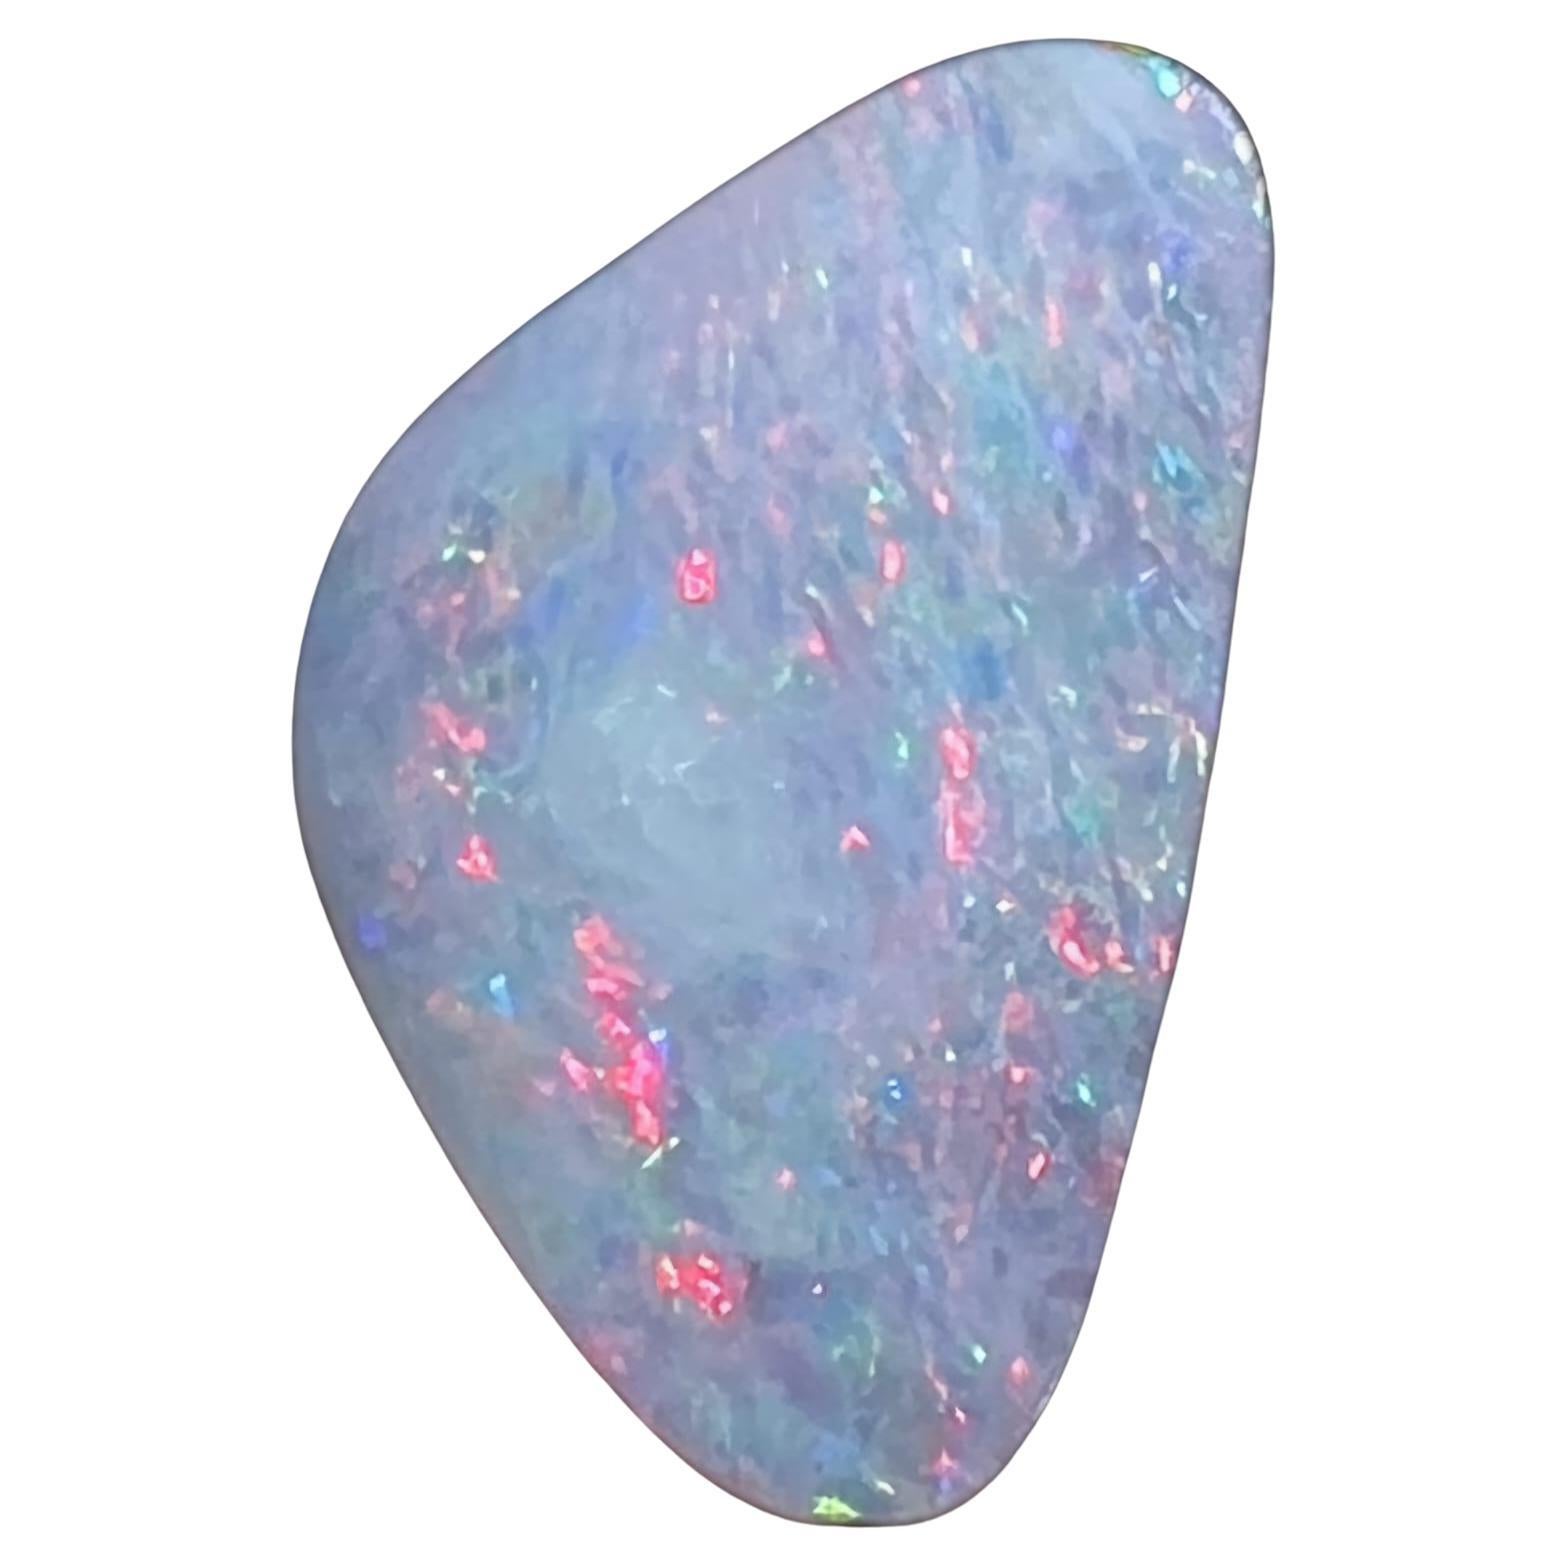 Opale rocheuse rose australienne de 5,24 carats extraite par Sue Cooper